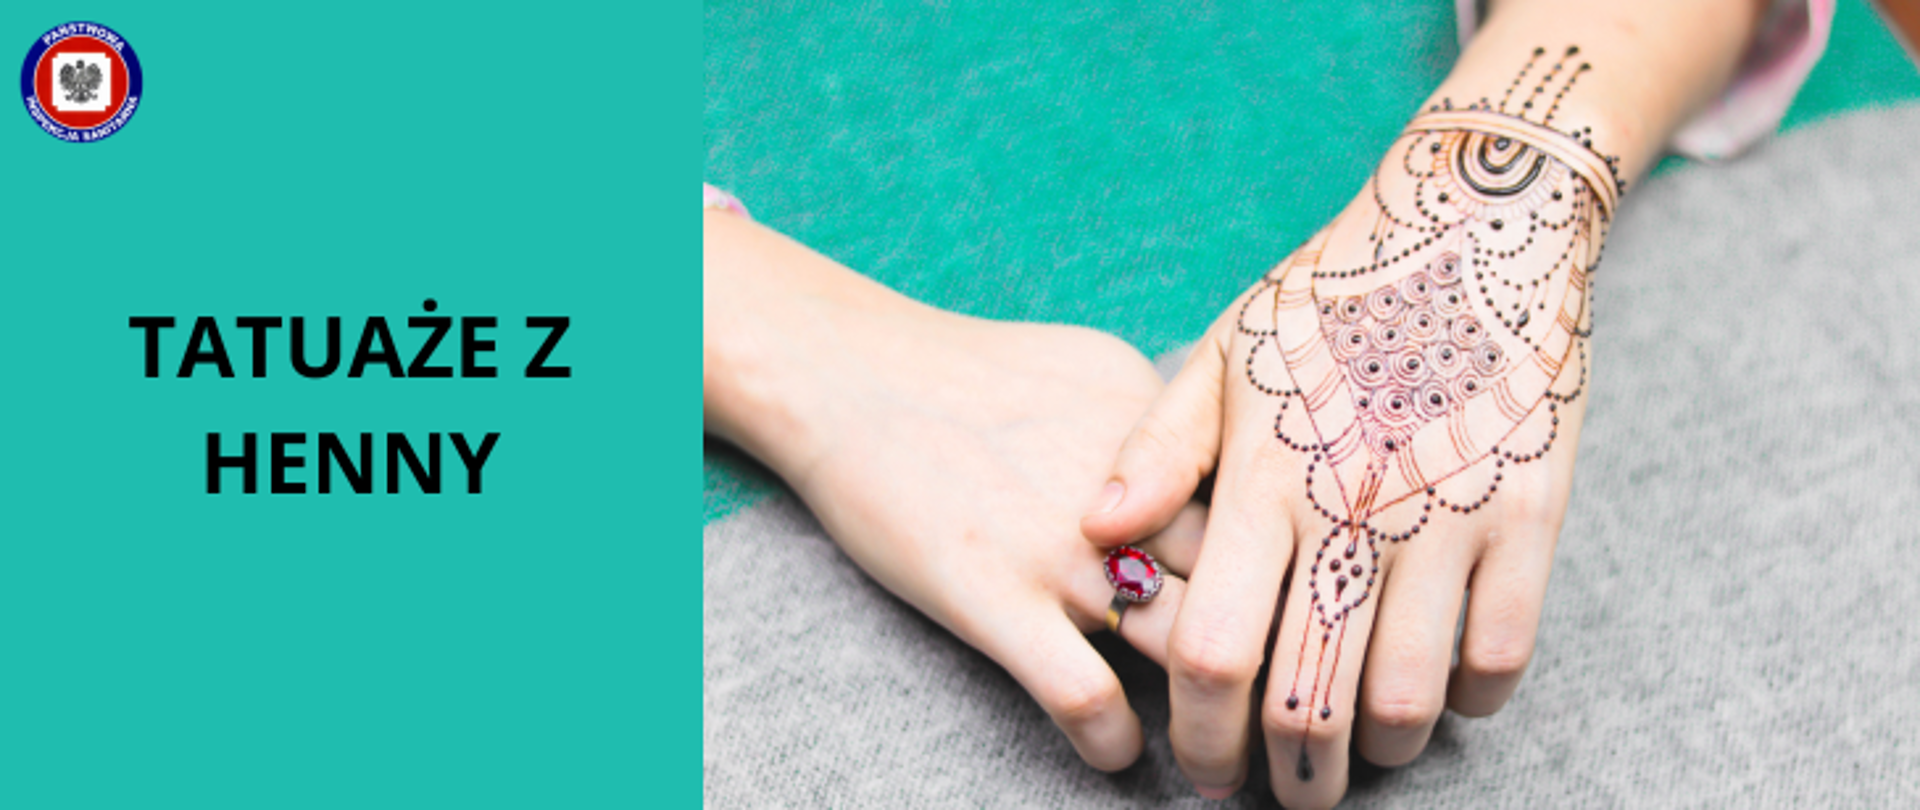 Na turkusowym tle dłonie kobiety. Na prawej ręce, na dłoni pierścionek z czerwonym owalnym kamieniem. Na lewej dłoni tatuaż wykonany z henny. Po lewej stronie napis Tatuaże z henny. W lewym górnym rogu logo Państwowej Inspekcji Sanitarnej.